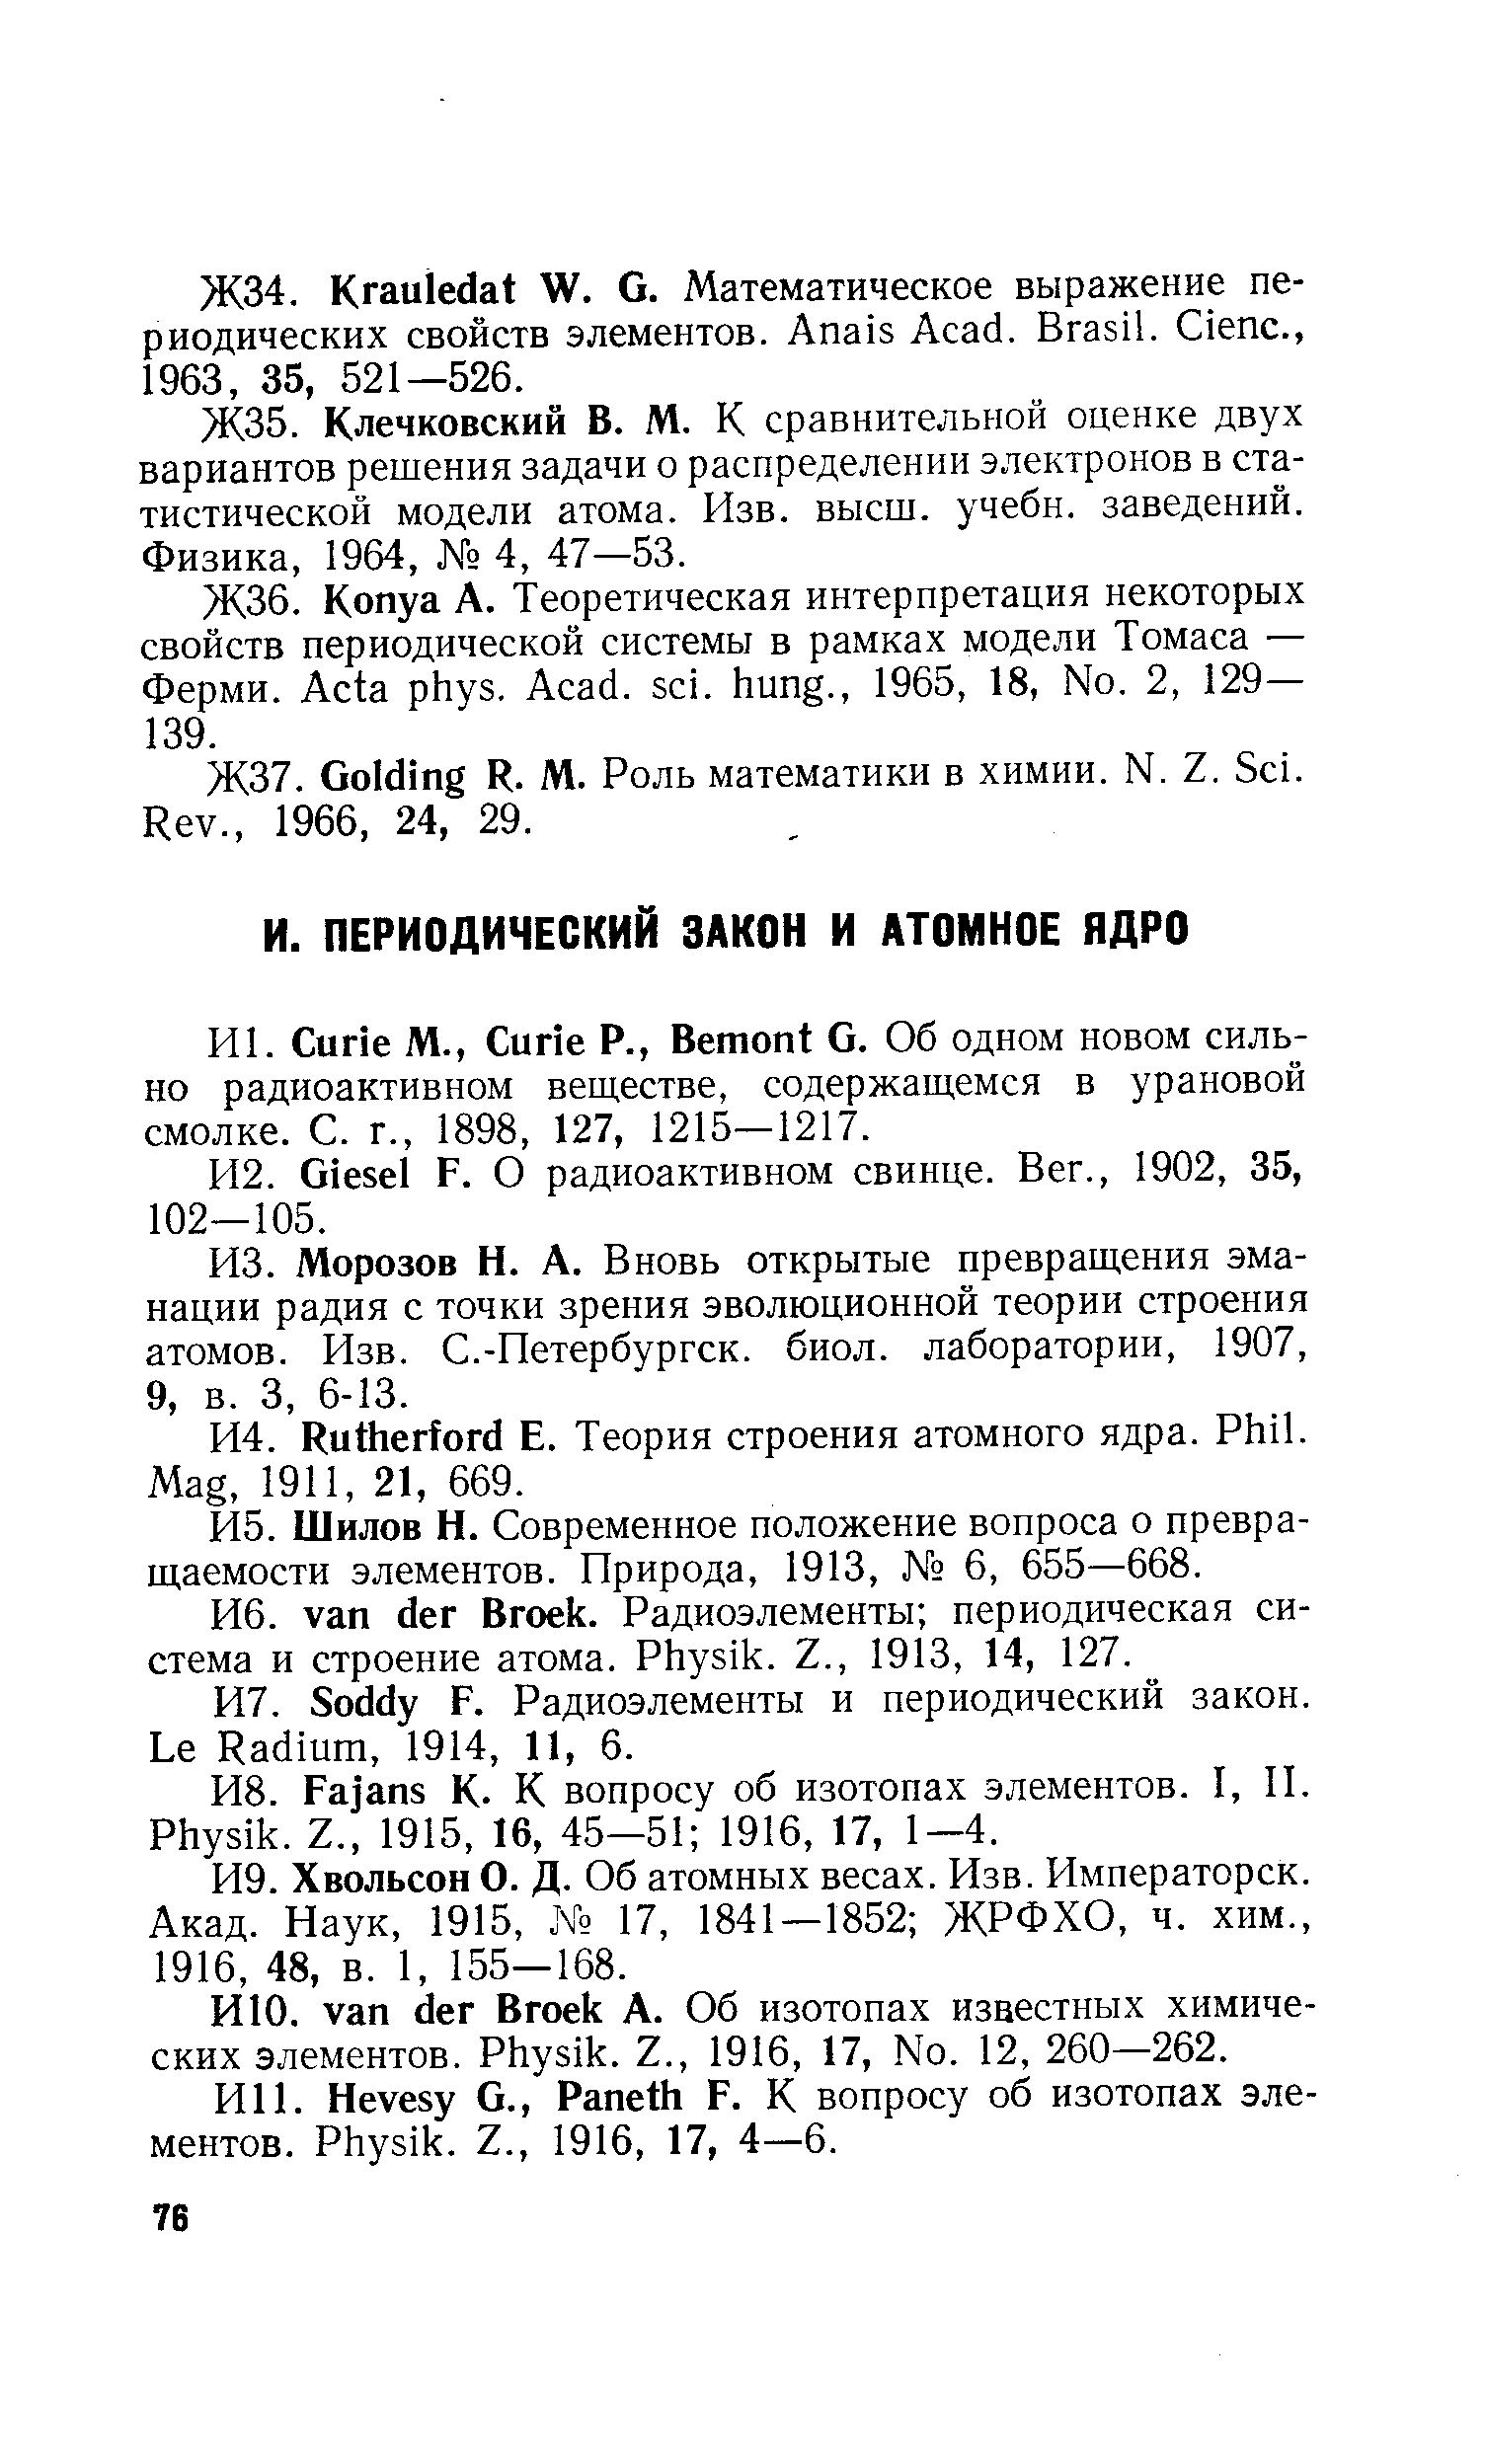 Шилов Н. Современное положение вопроса о превращаемости элементов. Природа, 1913, 6, 655—668.